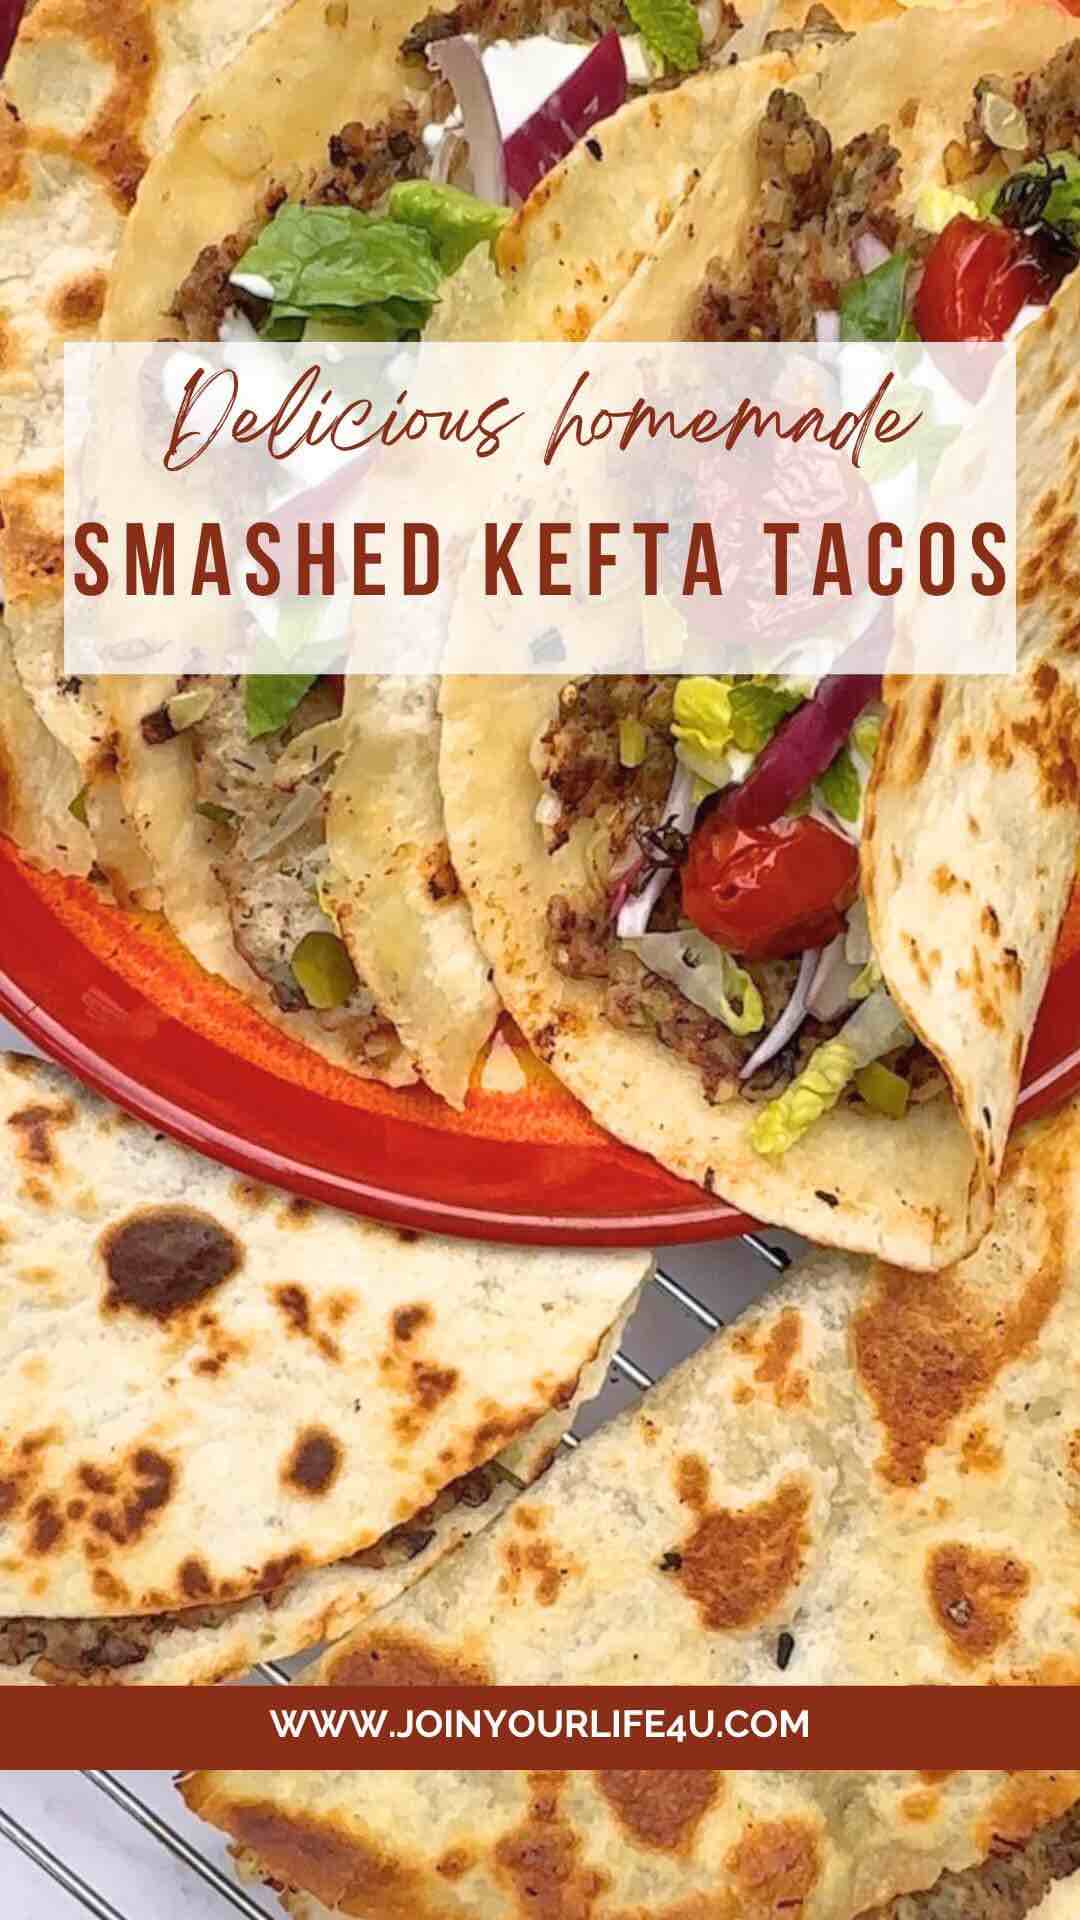 Smashed Kefta Tacos